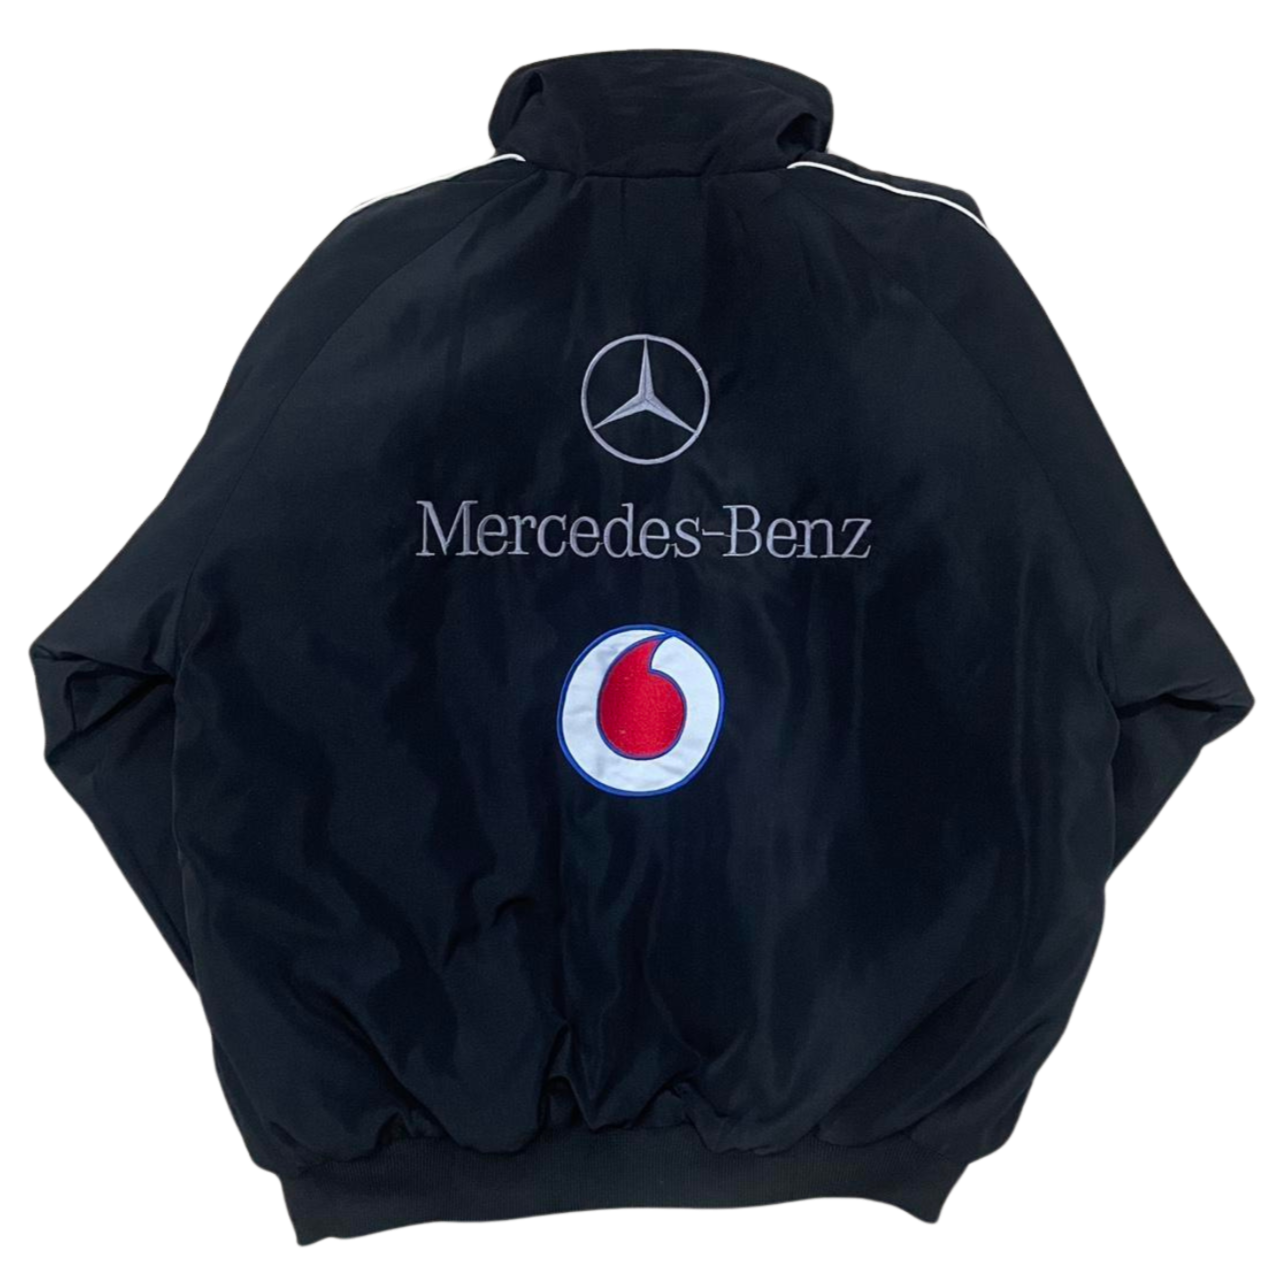 Unisex Mercedes-Benz Jacket